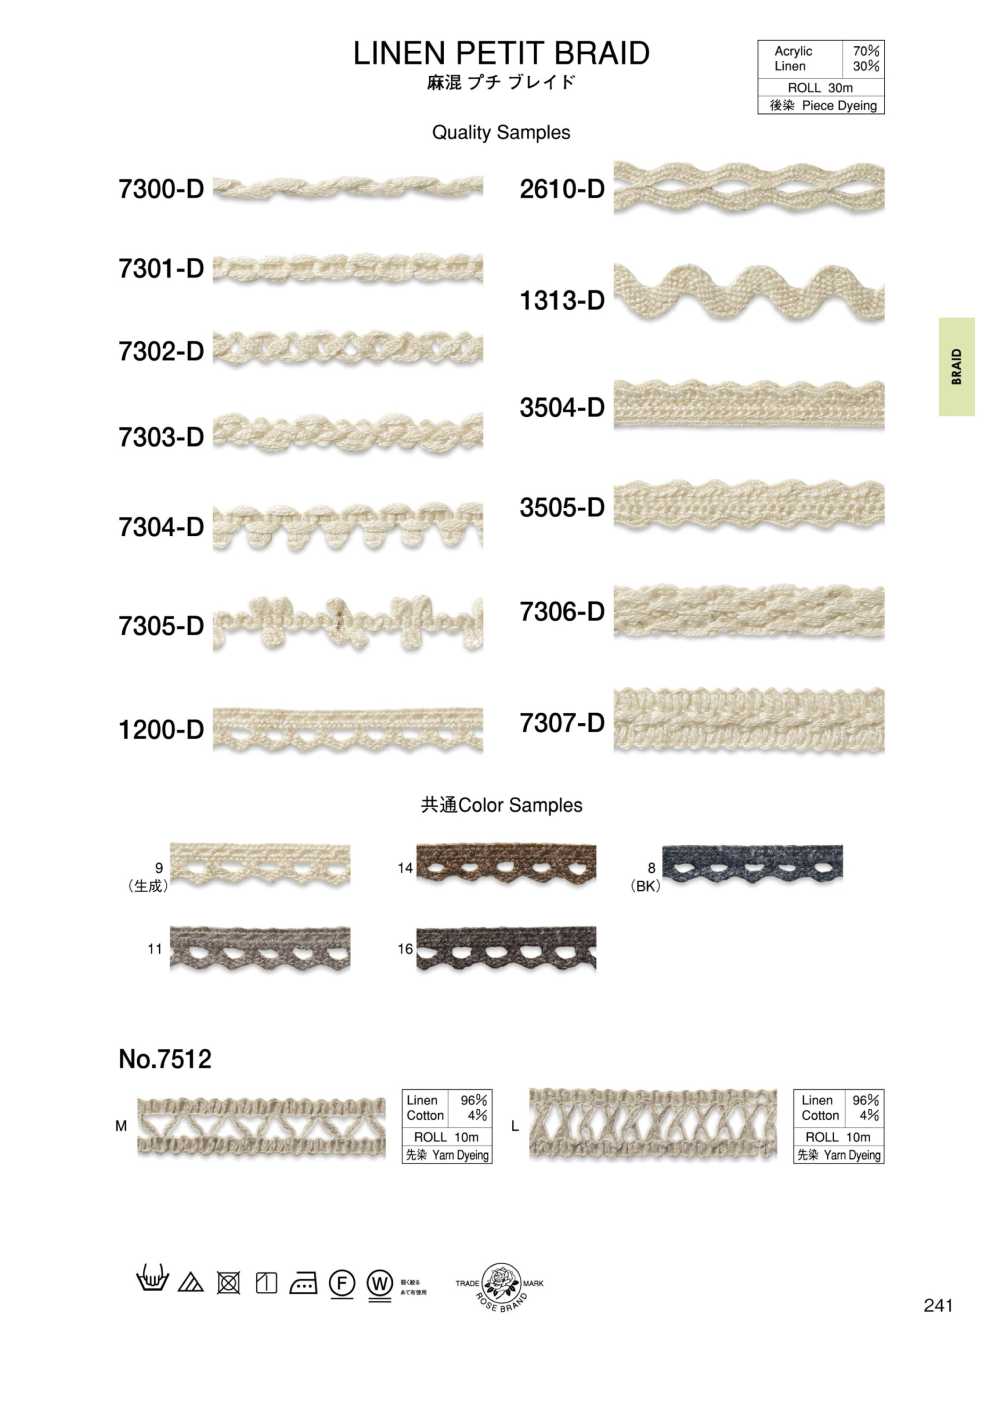 3504-D Linen Blend Petite Braid[Ribbon Tape Cord] ROSE BRAND (Marushin)